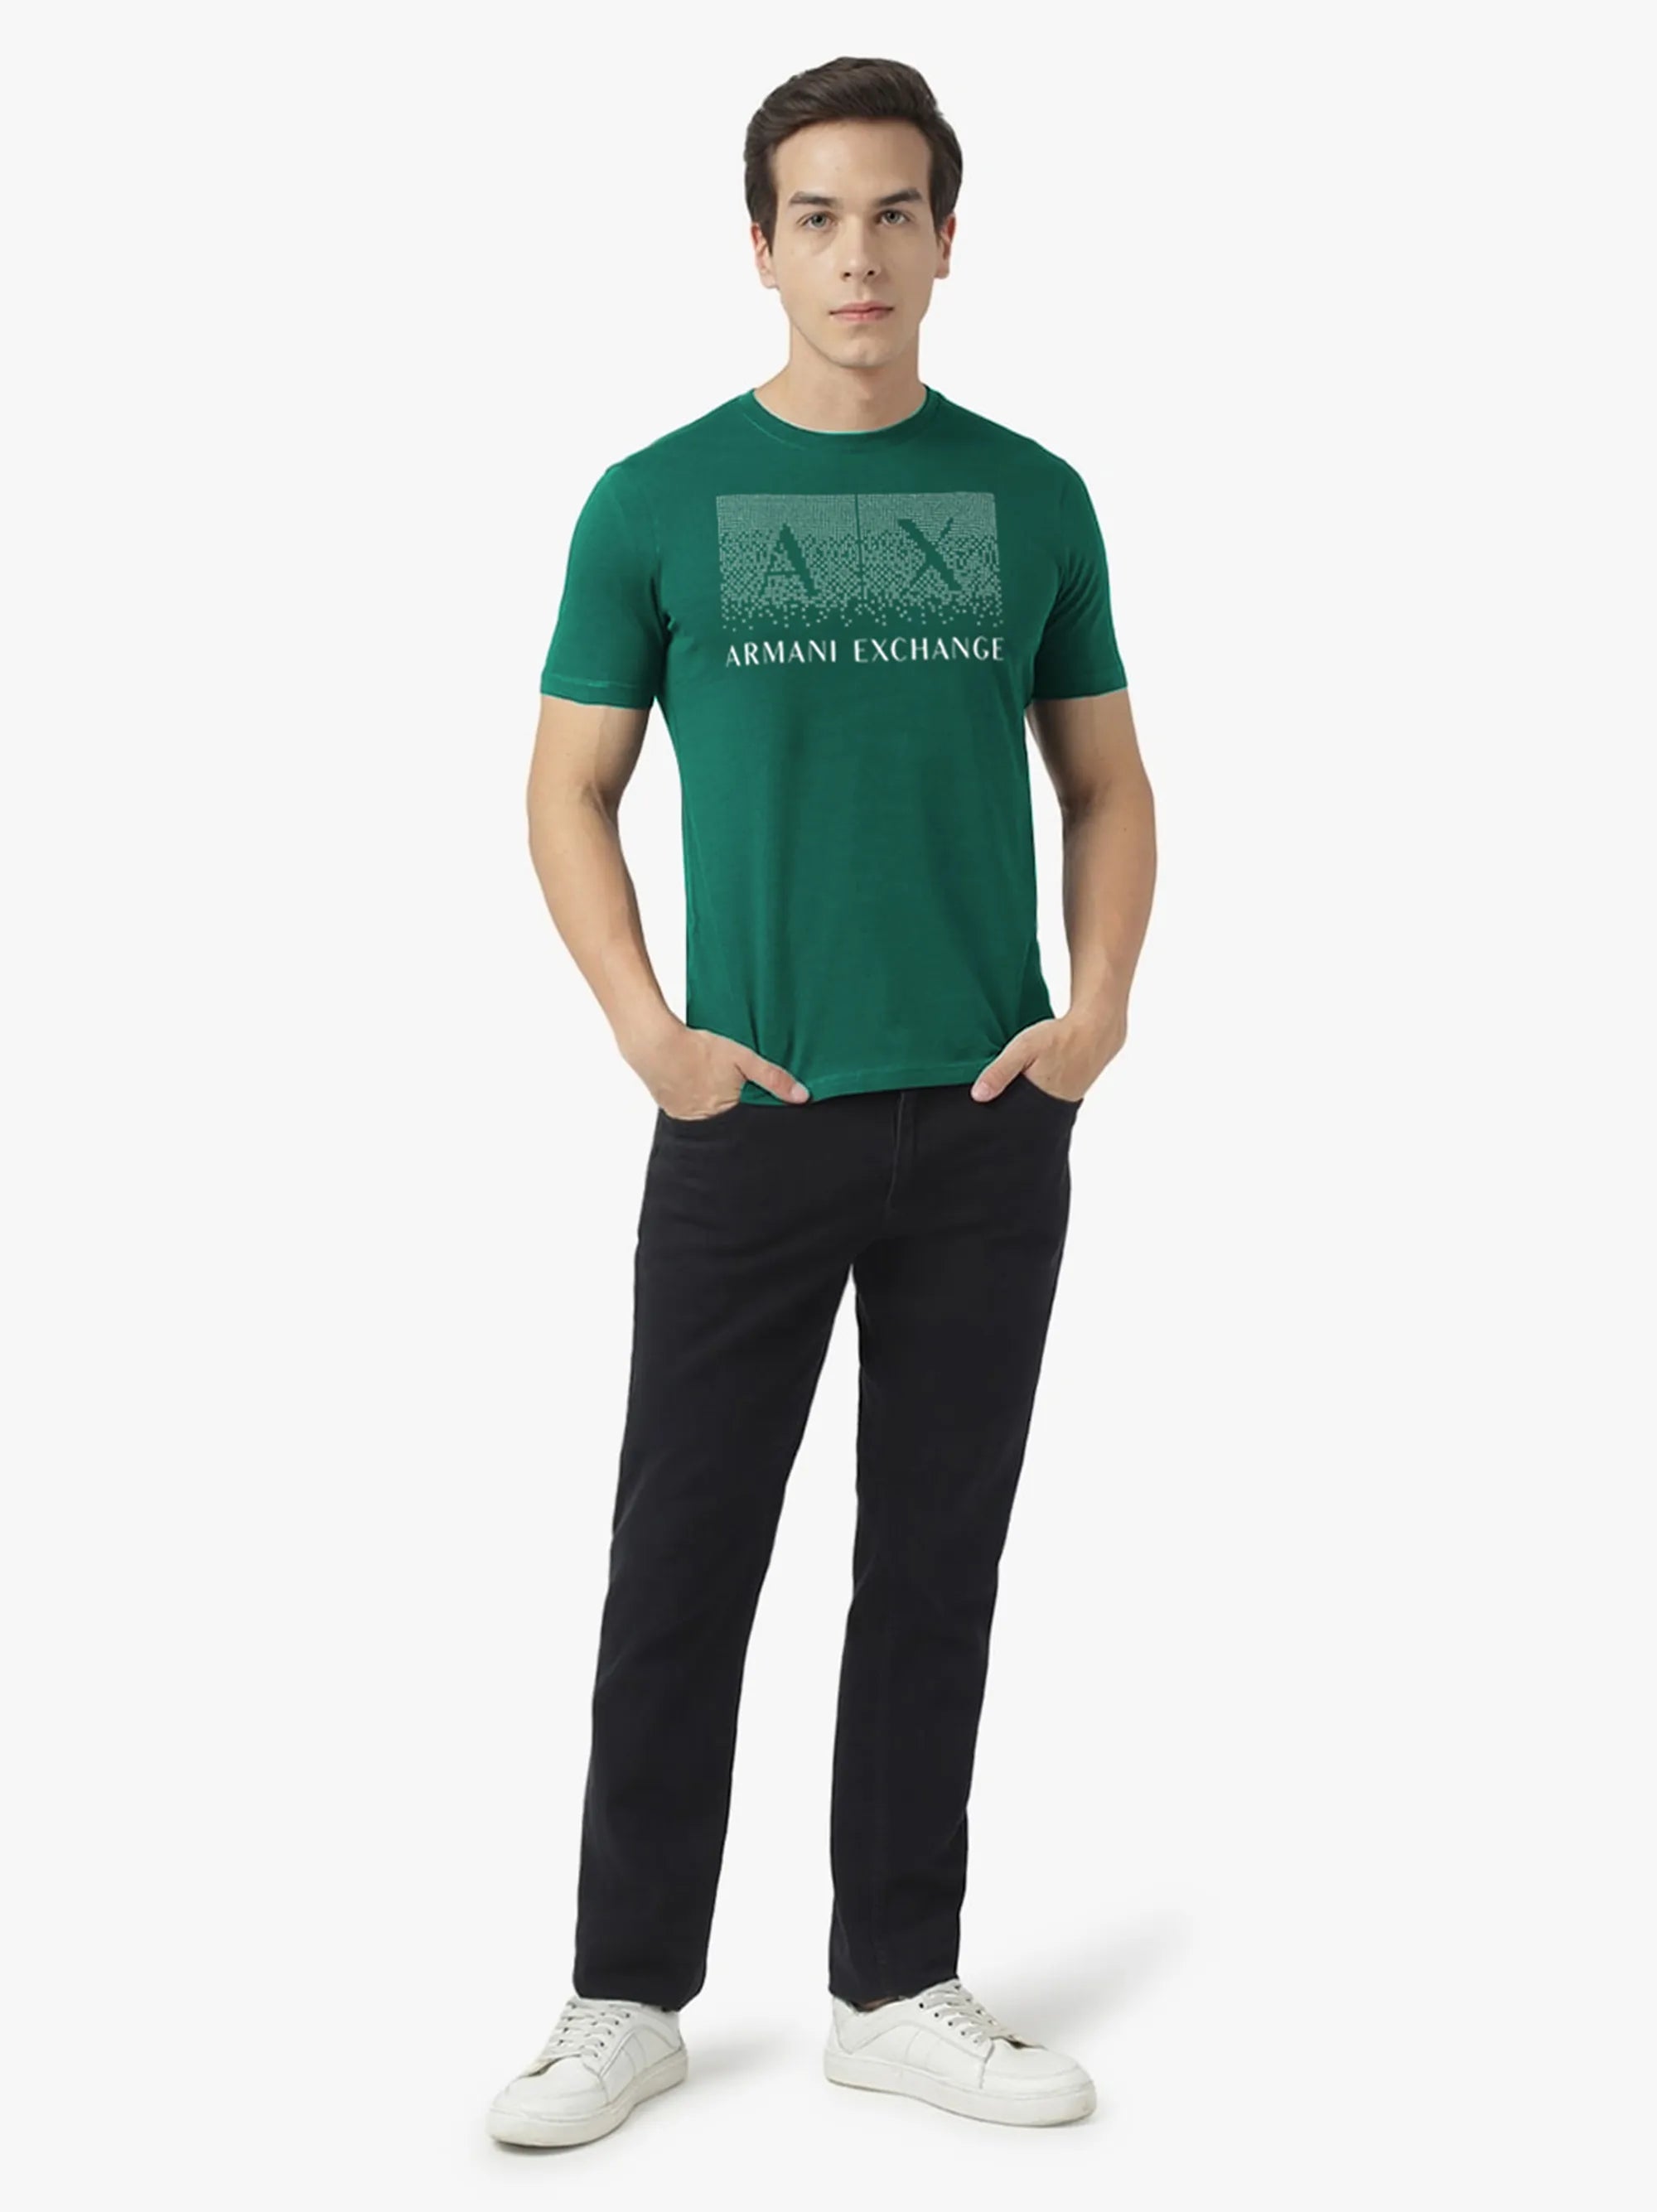 Men's Green Regular-Fit Box A|X Logo T-Shirt